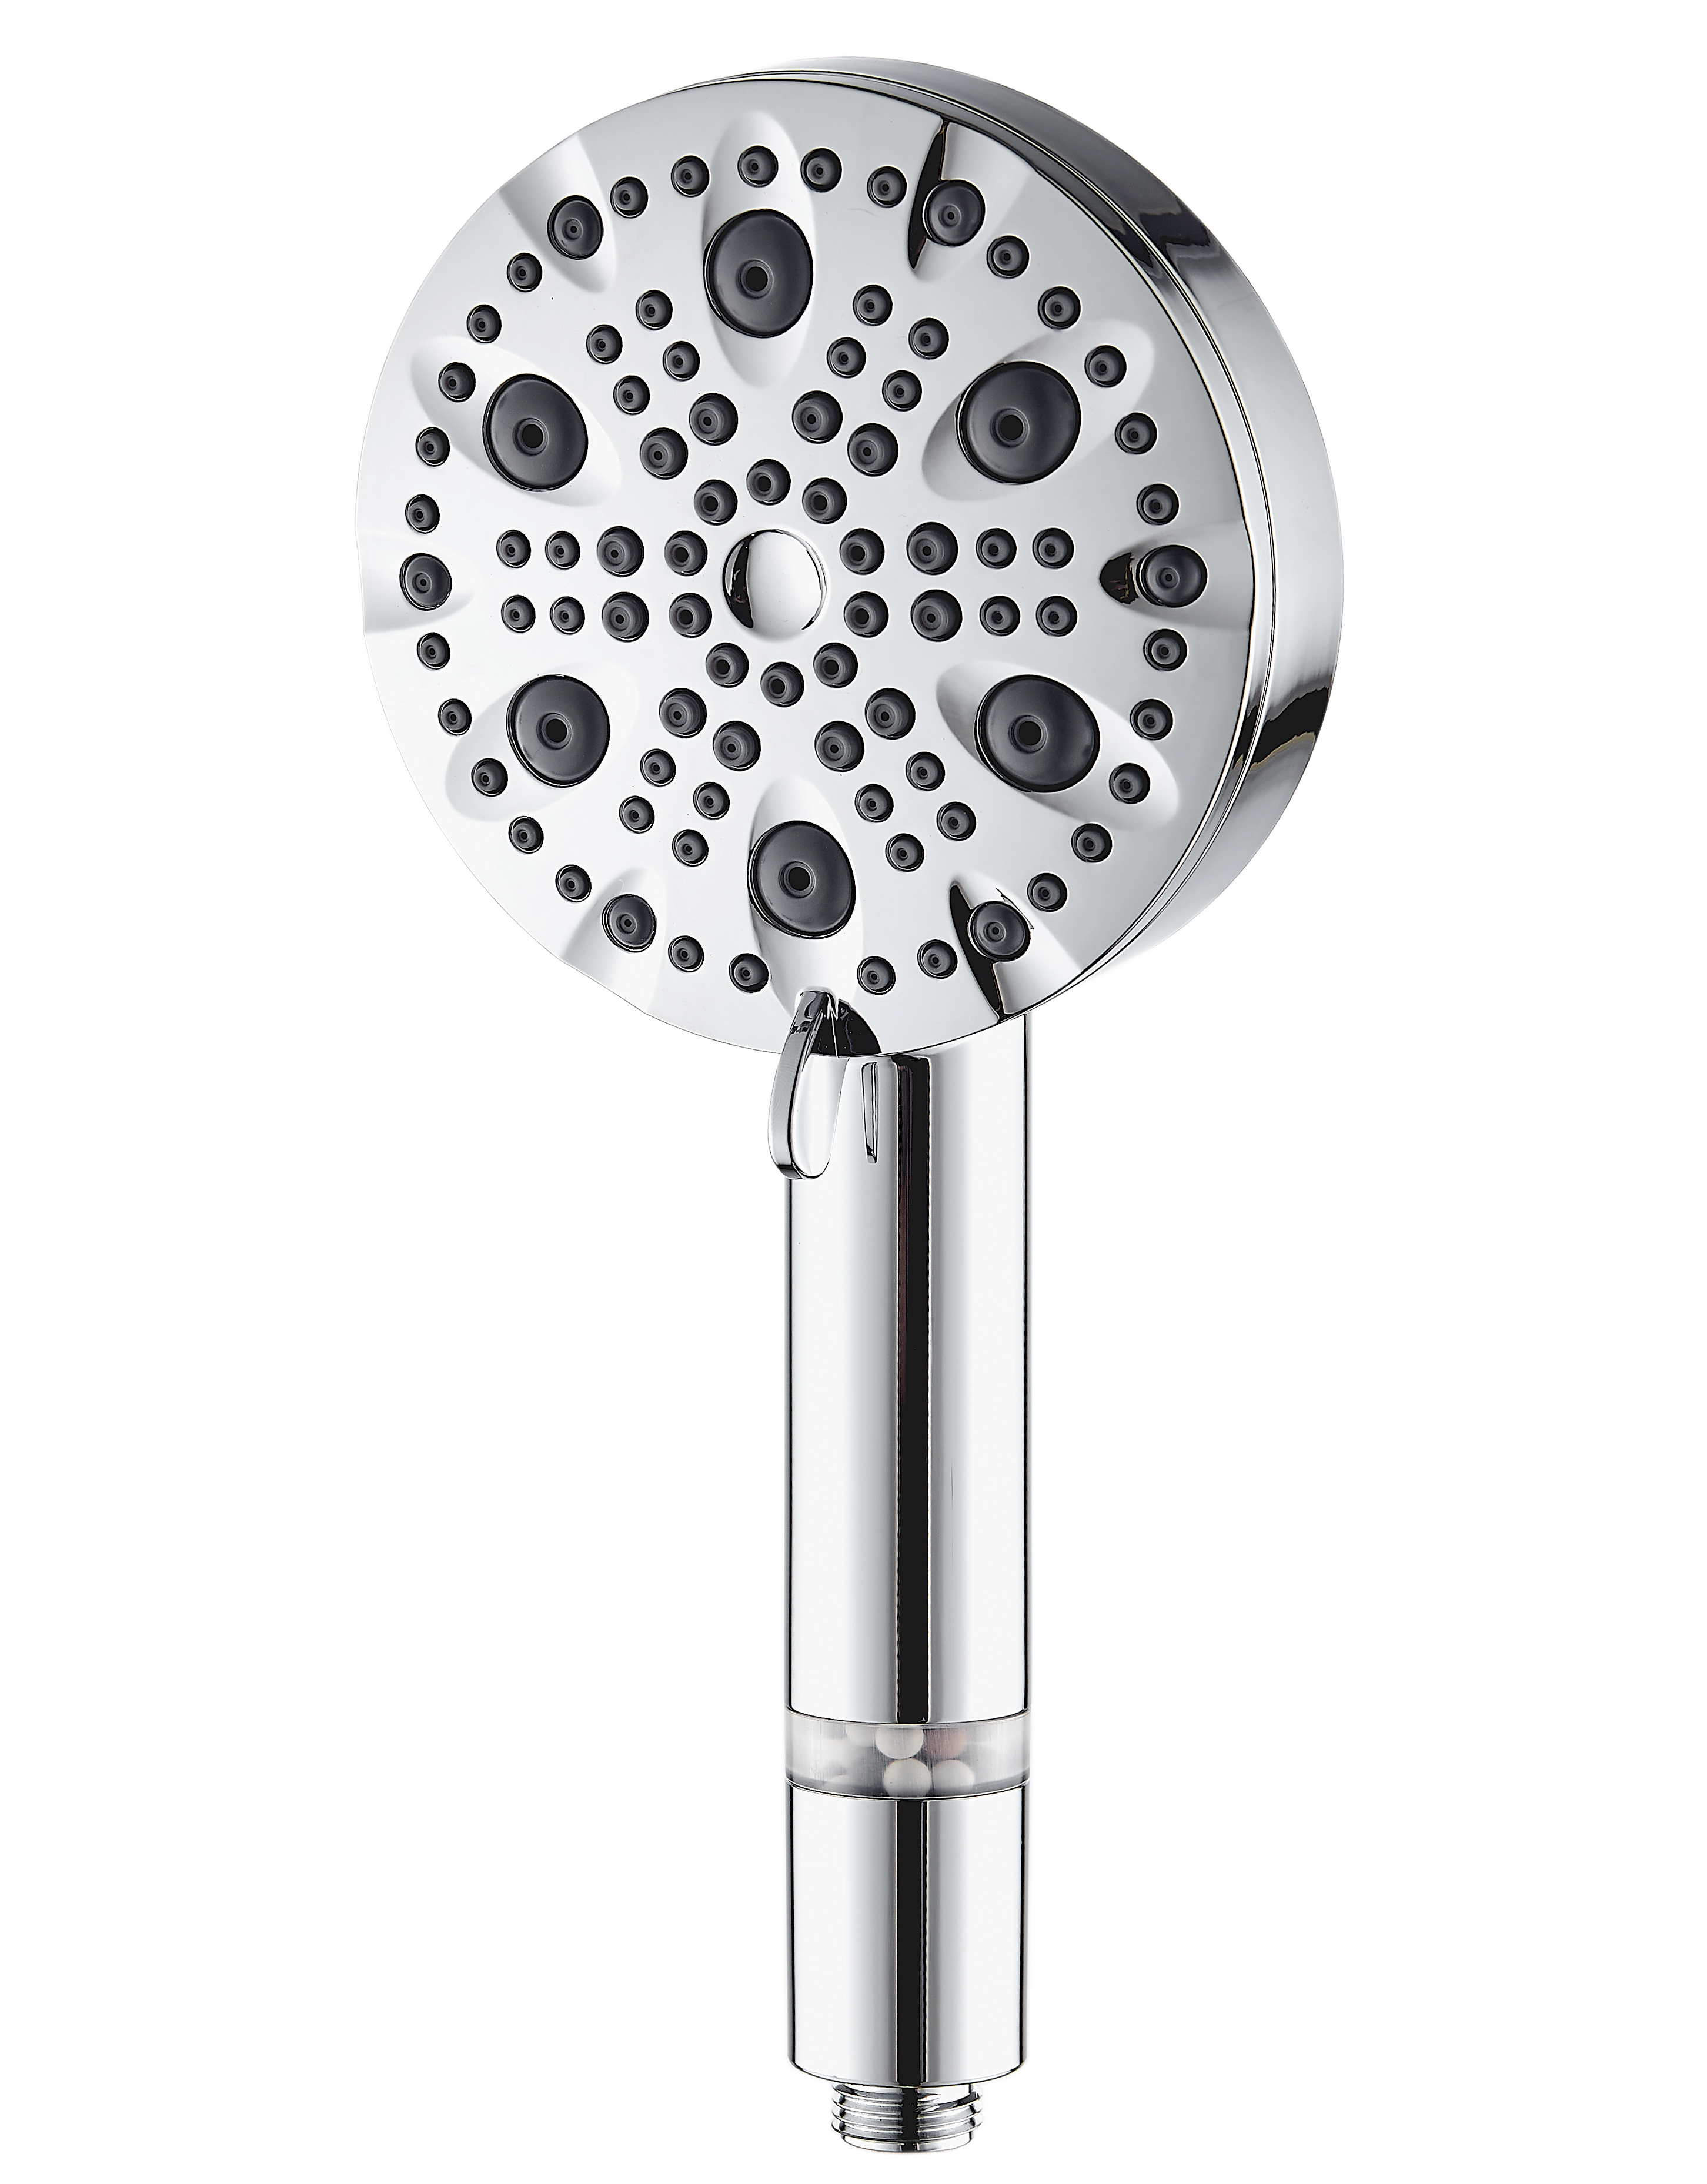 Vysokotlaká sprchová hlavice MineralStream Luxe s 9 režimy (filtrovaná)